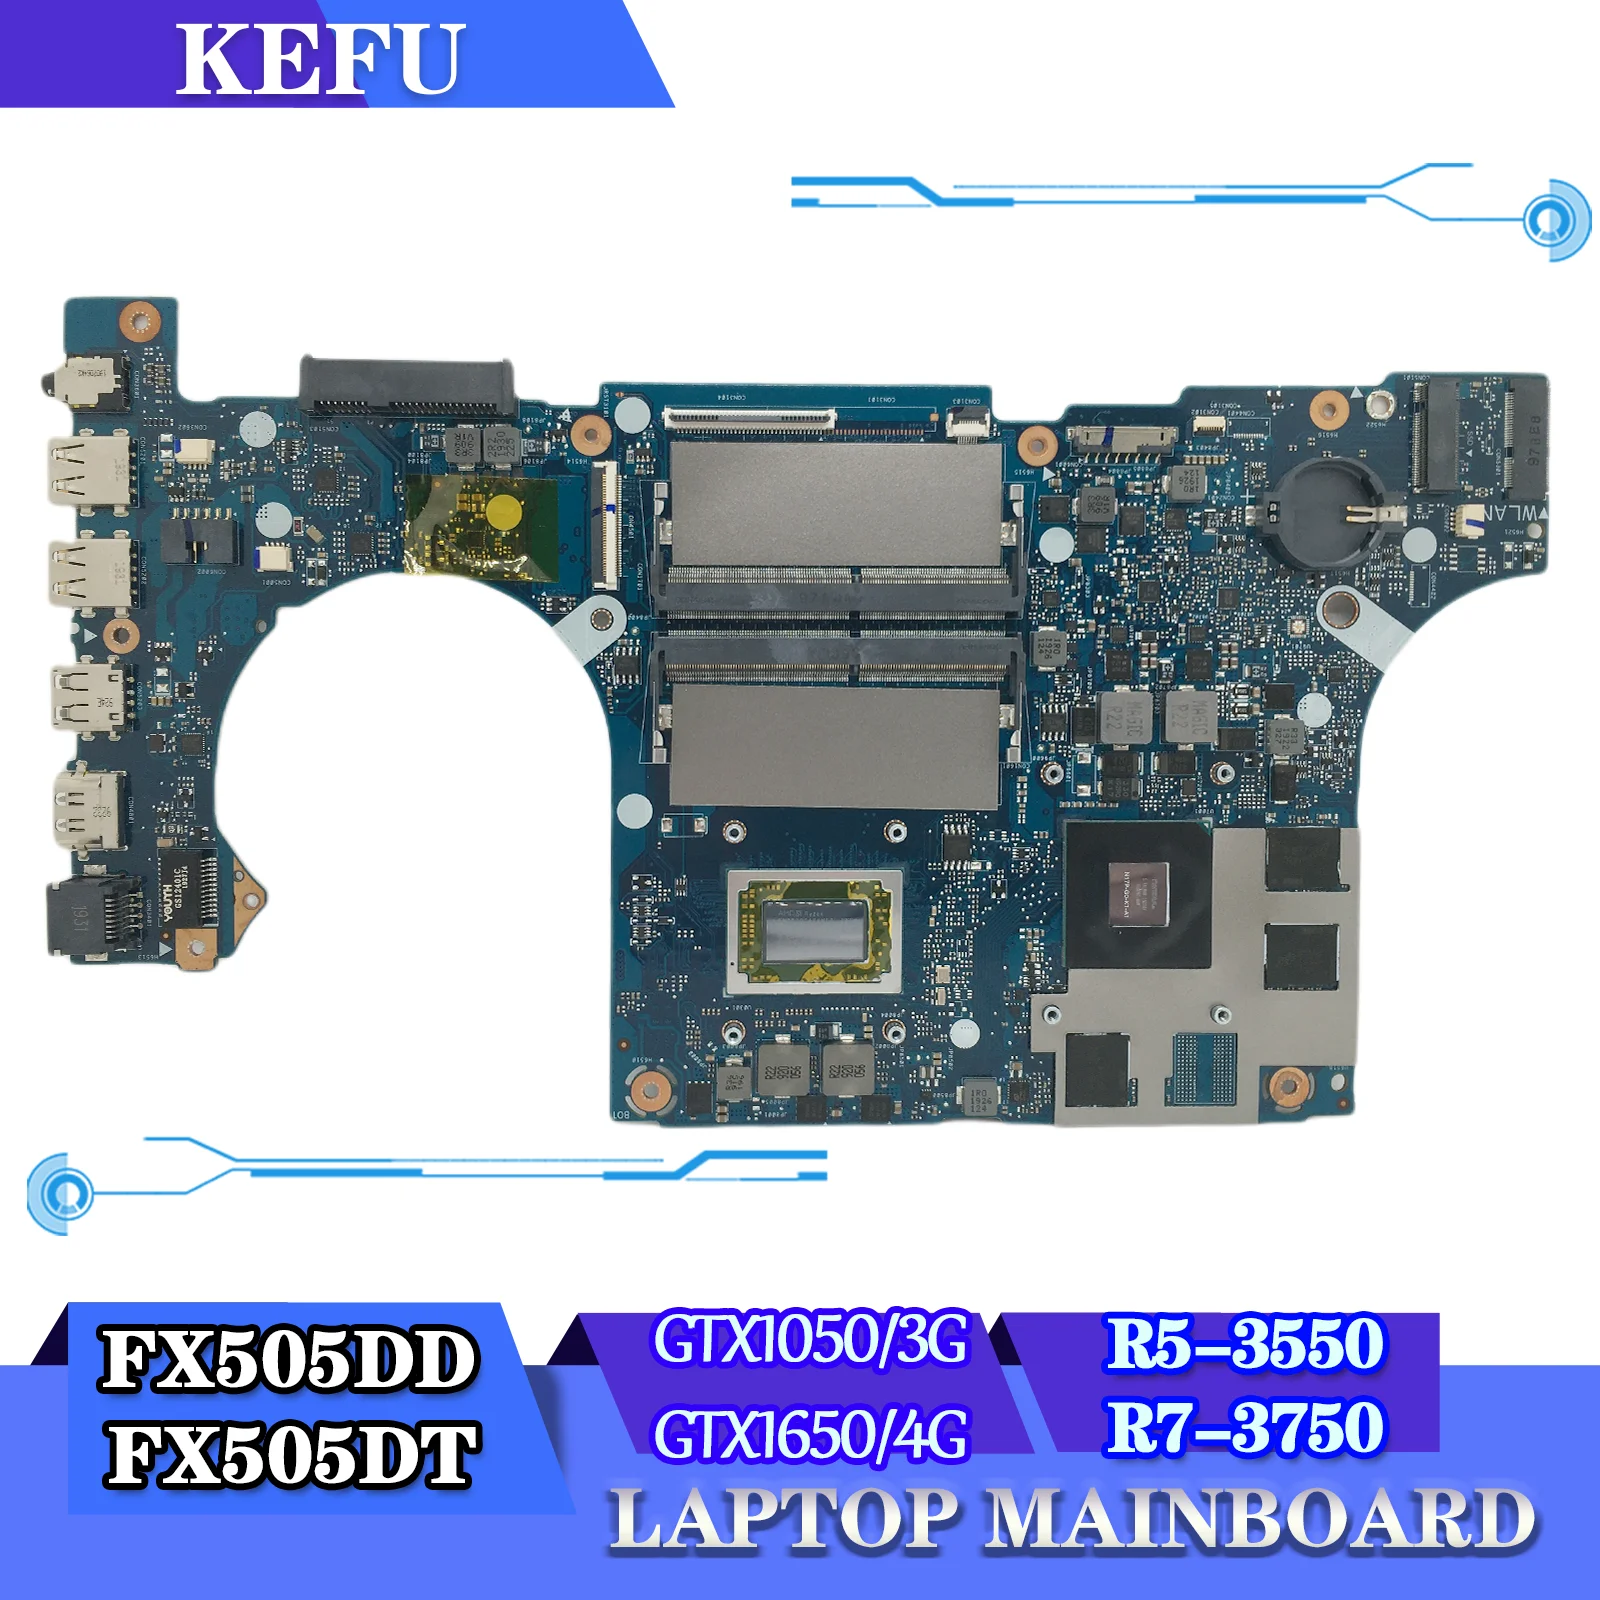 

FX505DD Laptop Motherboard FX505DT FX95DT FX95D FX705DT FX705DD Mainboard AMD Ryzen R5-3500H R7-3750 GTX1050/3G GTX1650/4G